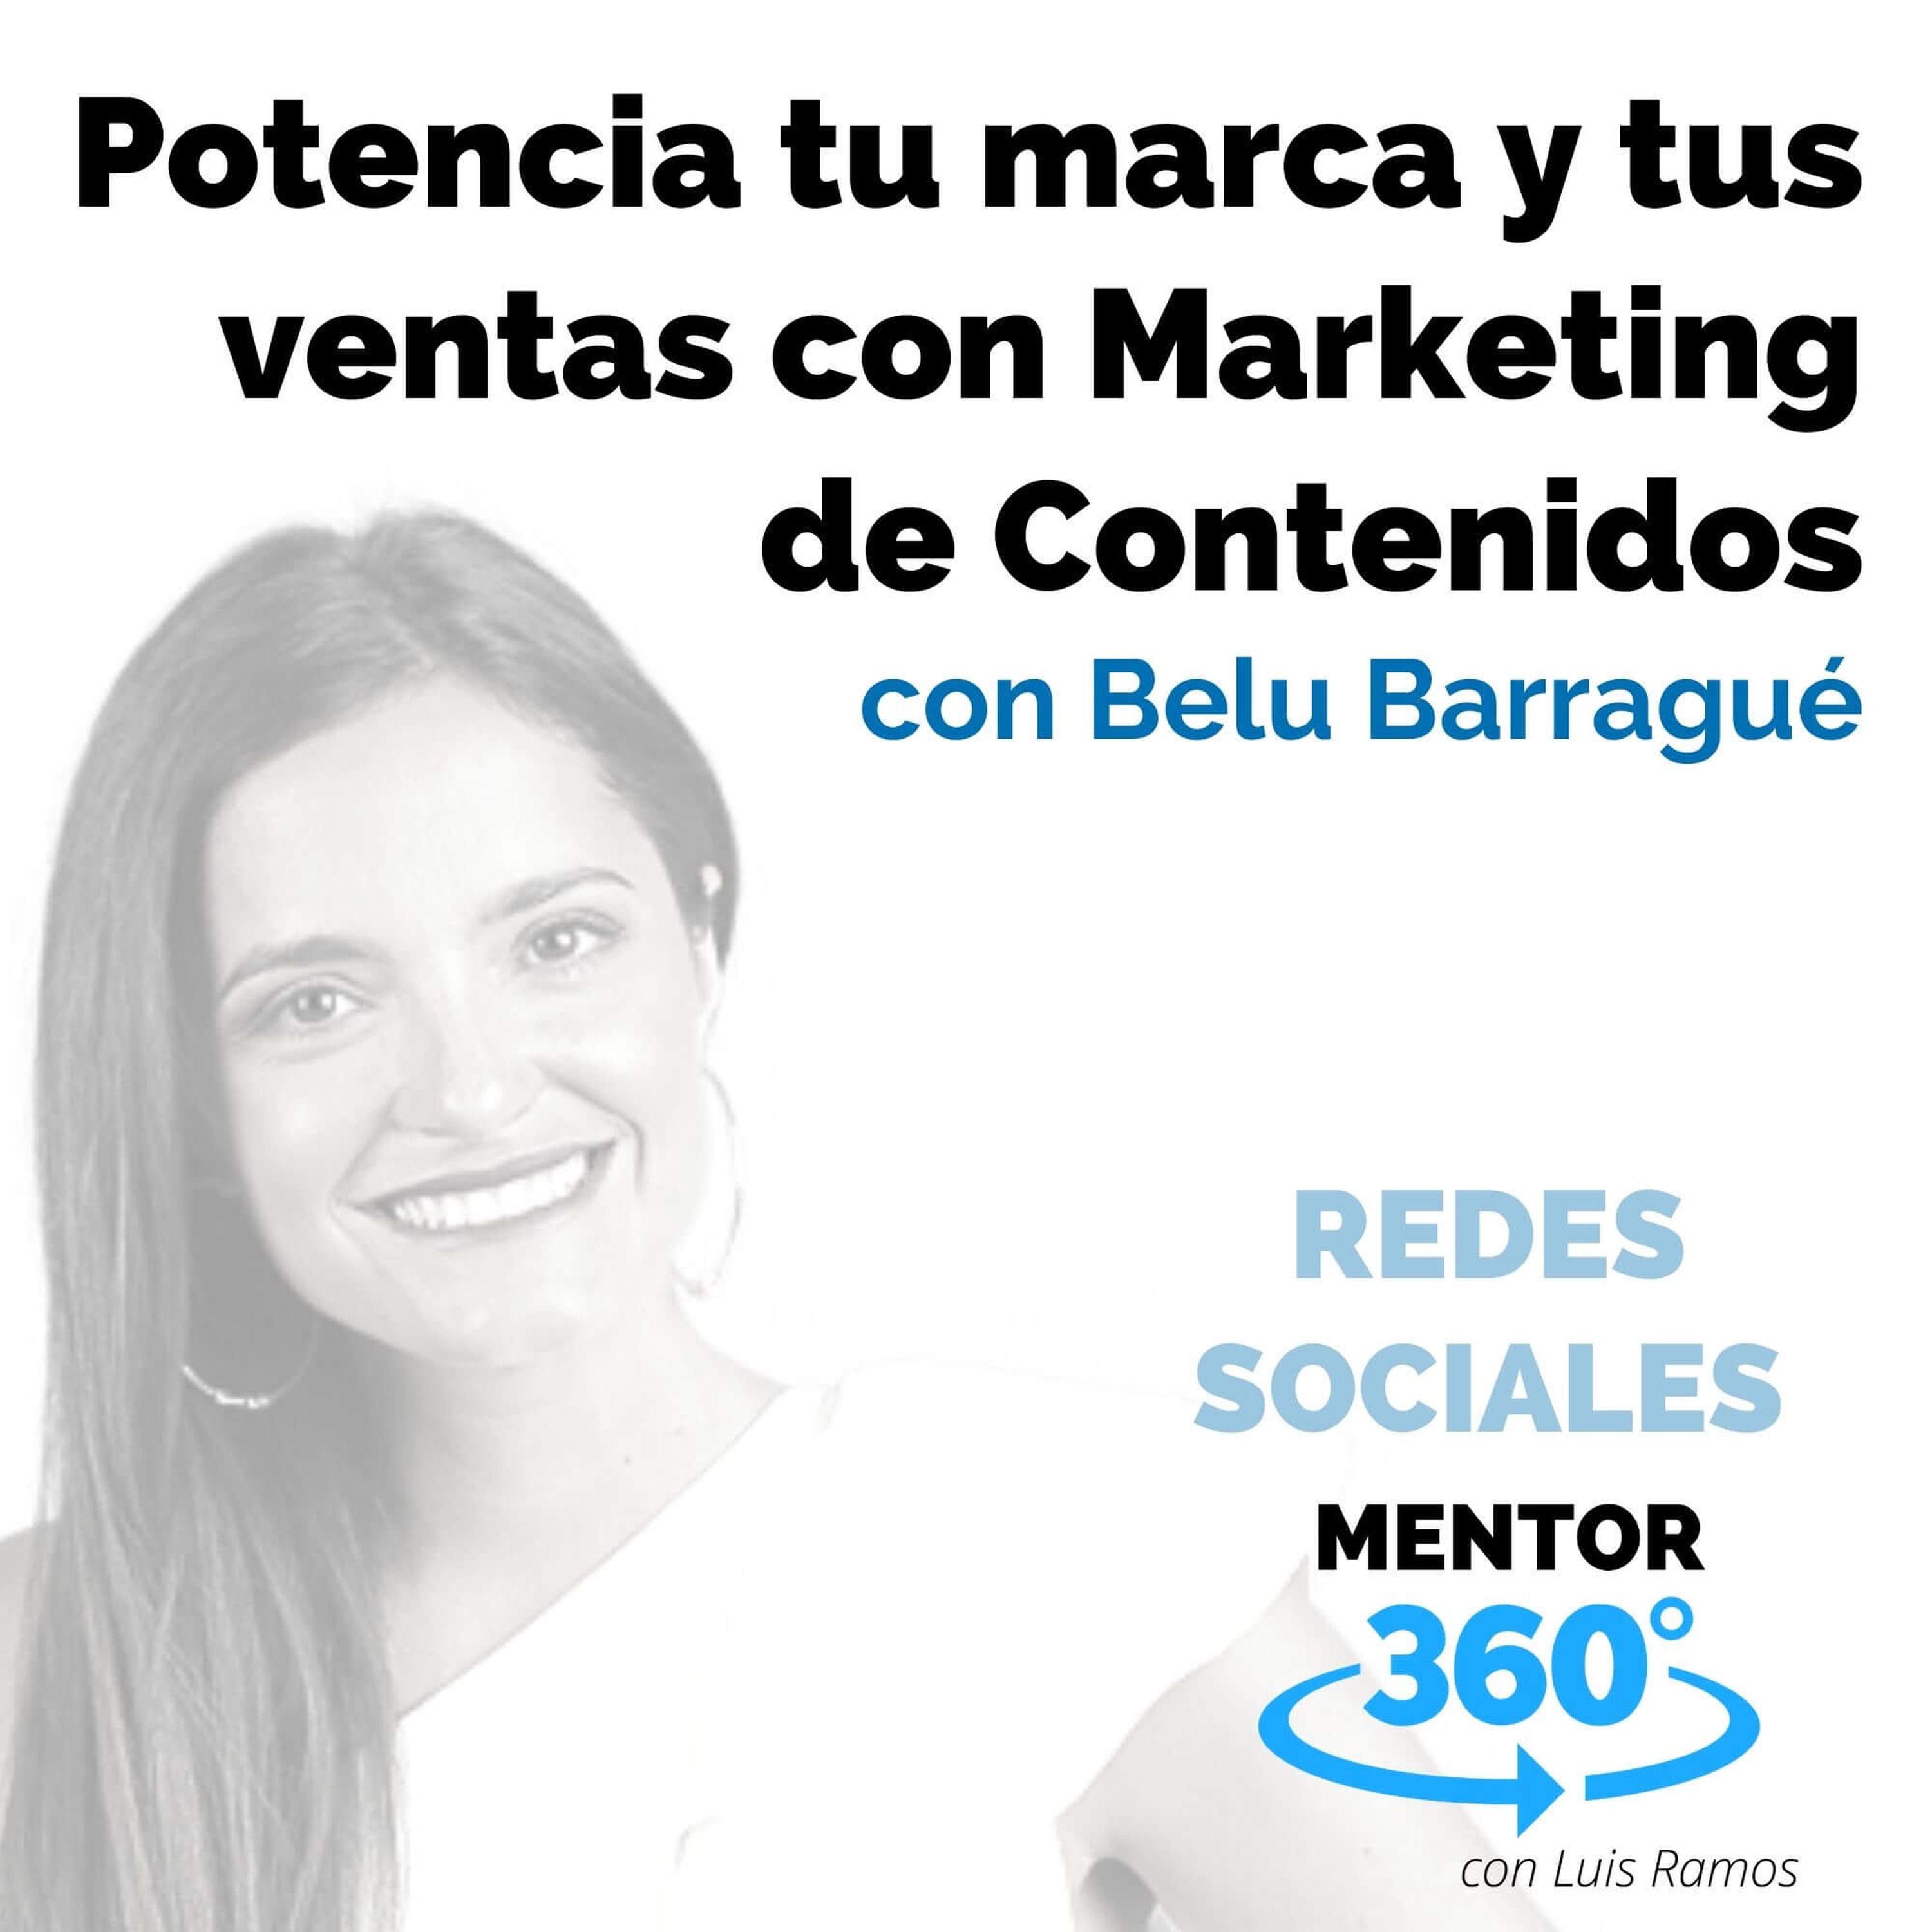 Potencia tu marca y tus ventas con Marketing de Contenidos, con Belu Barragué - REDES SOCIALES